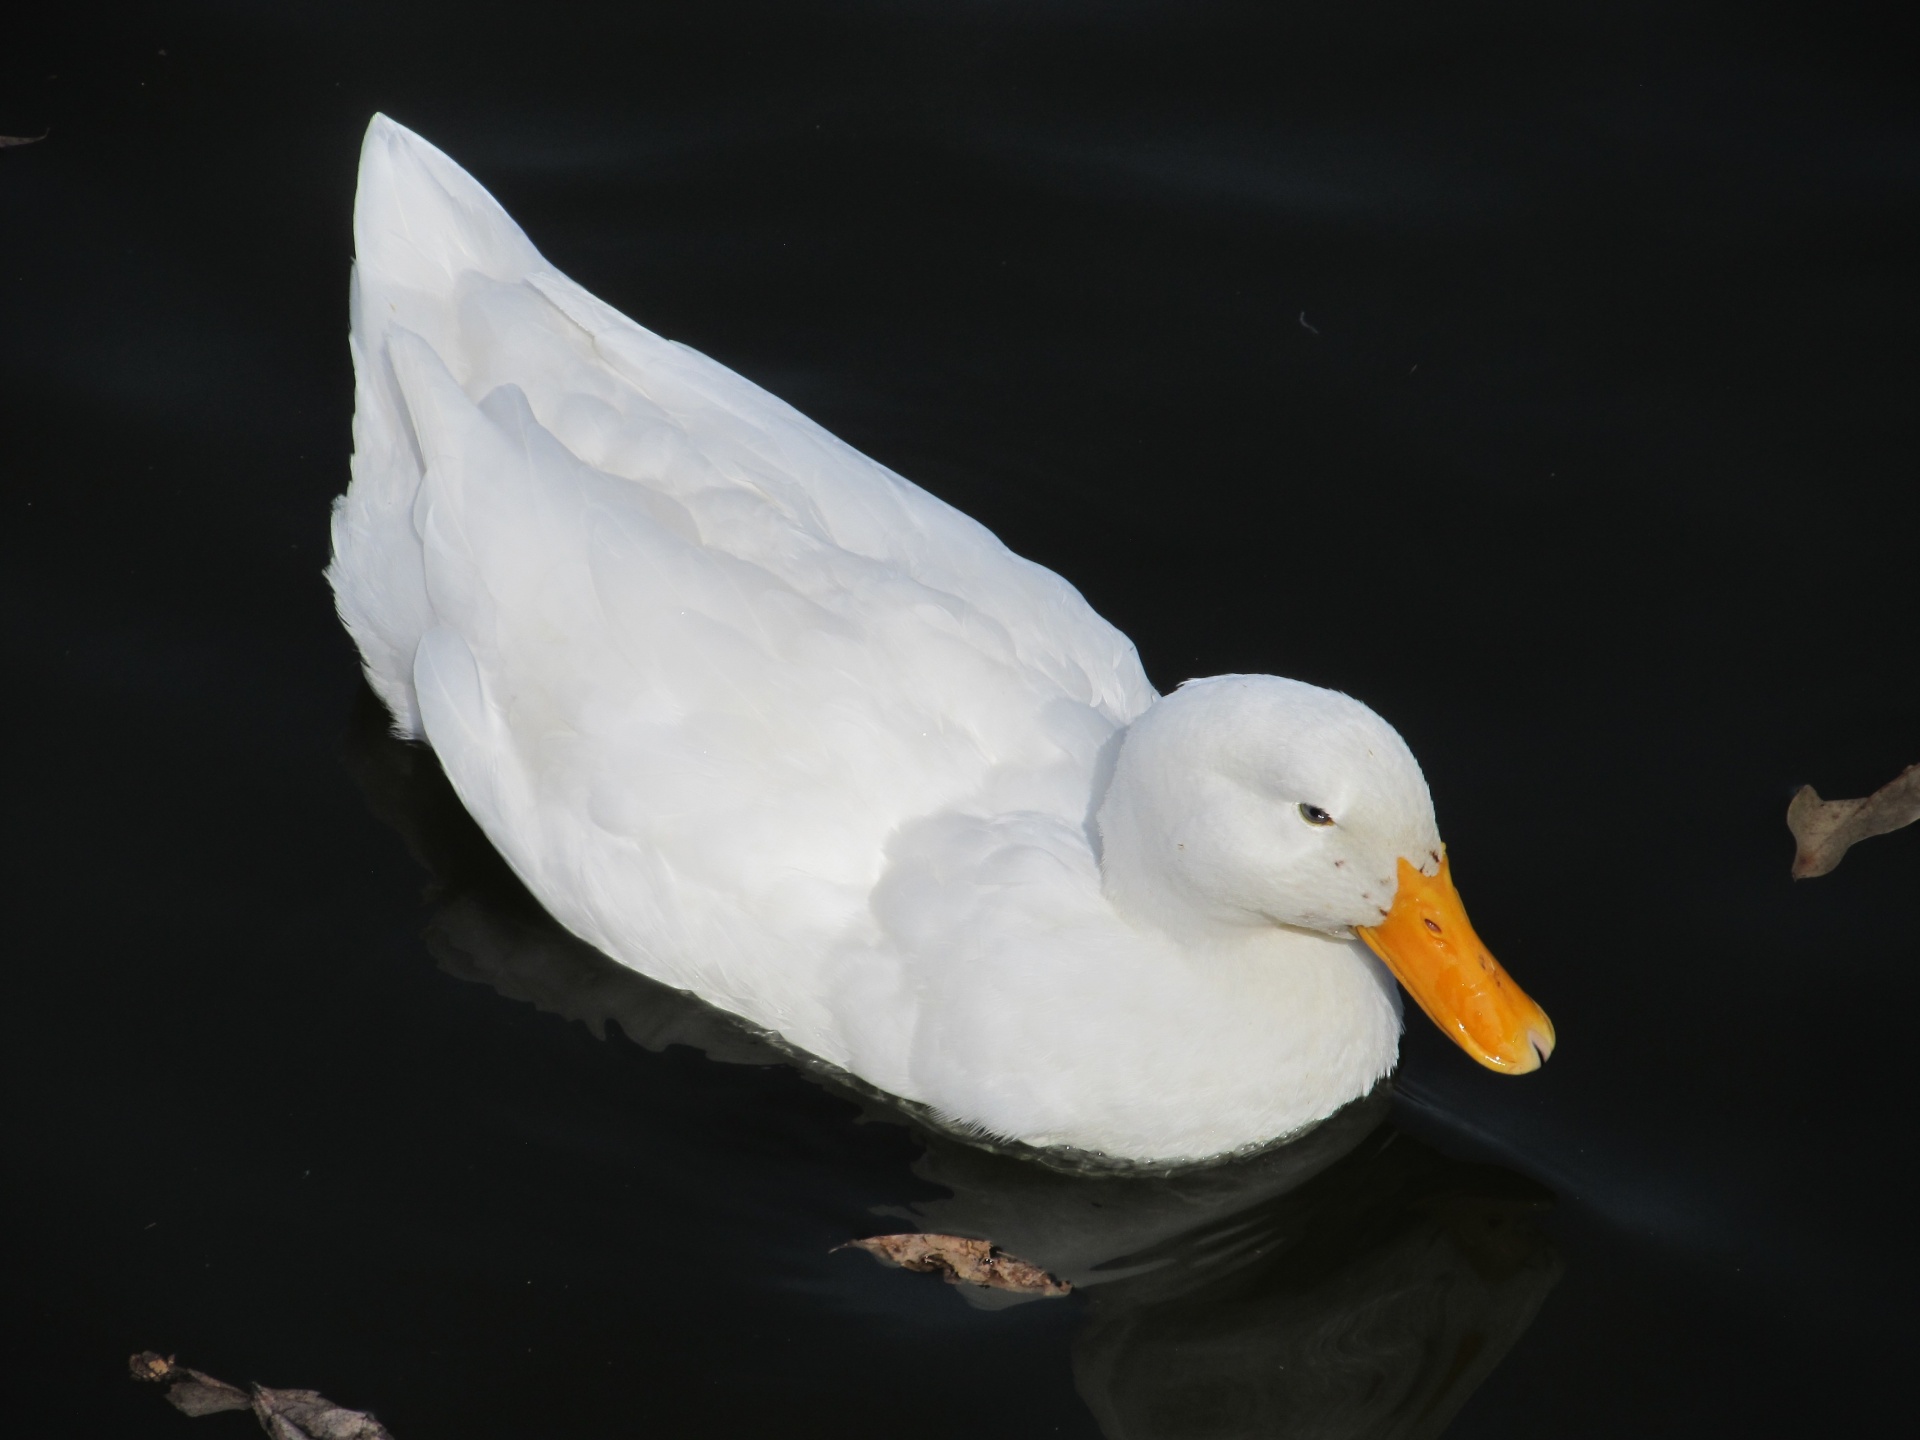 White Duck Swimming